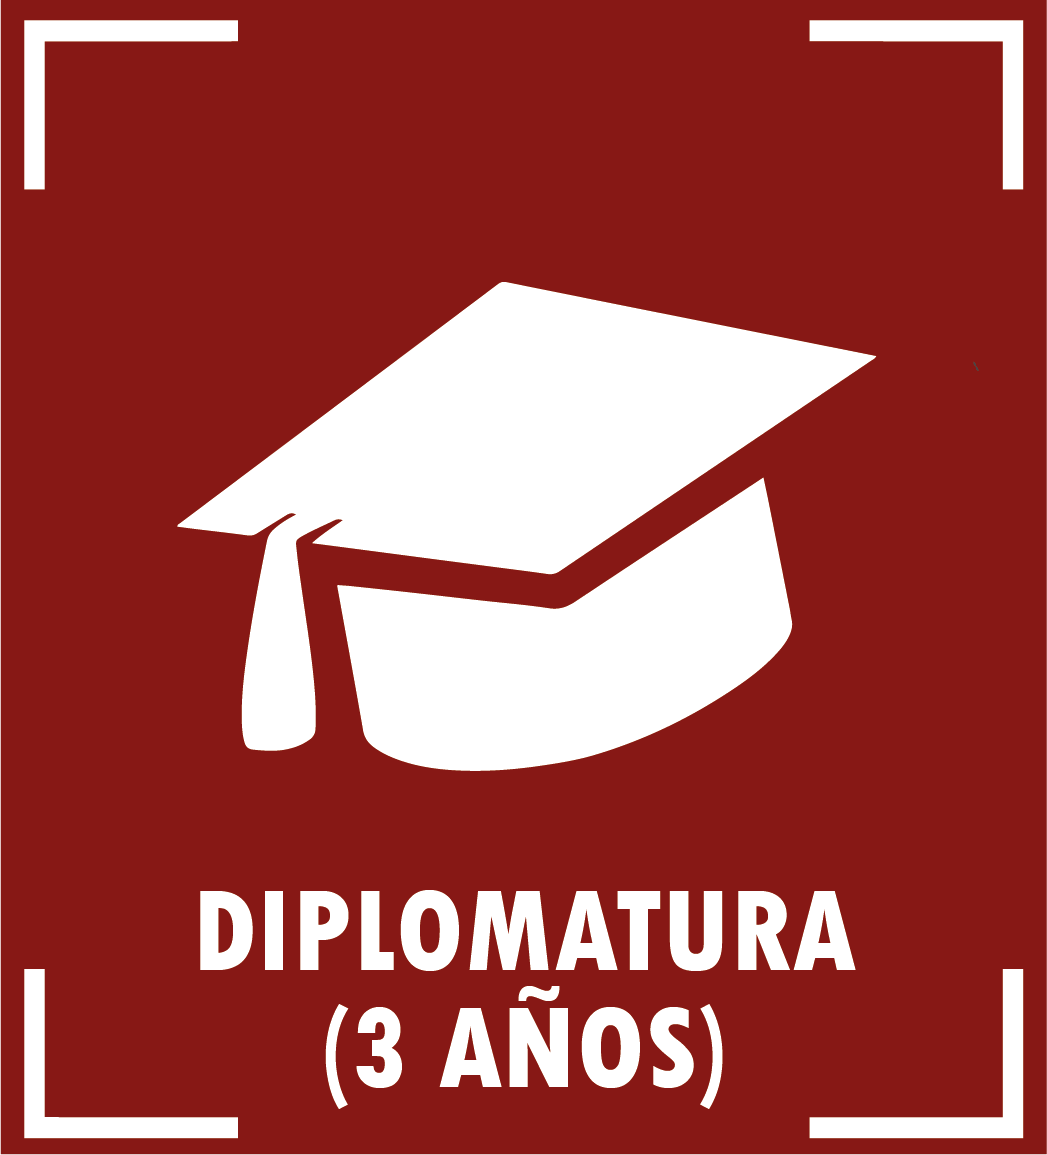 Diploma de postgrado